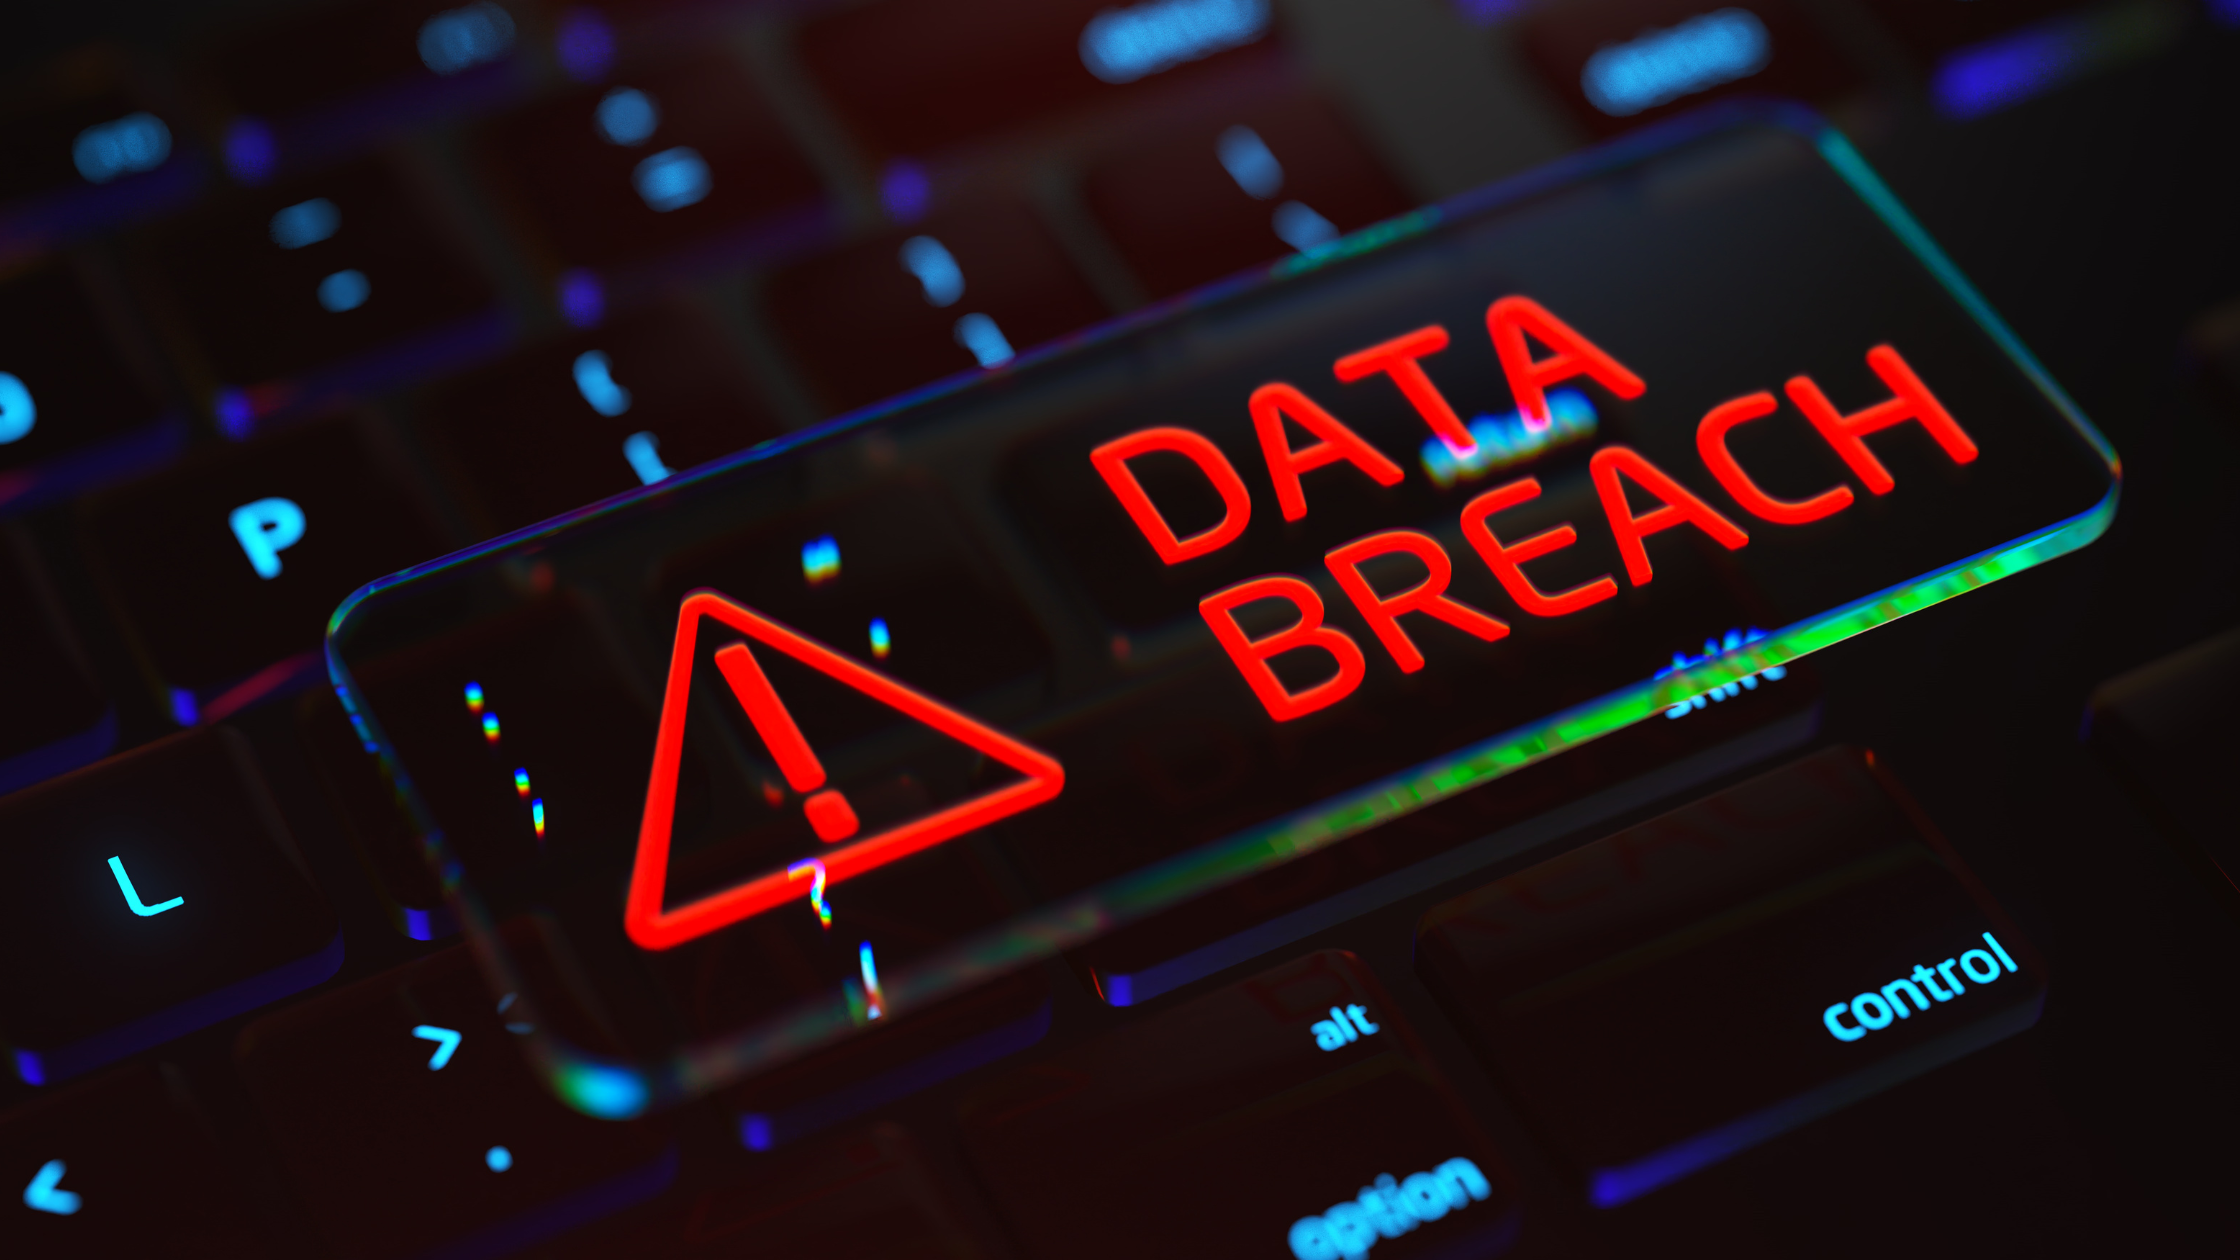 External Cyber Security Threats Data Breach